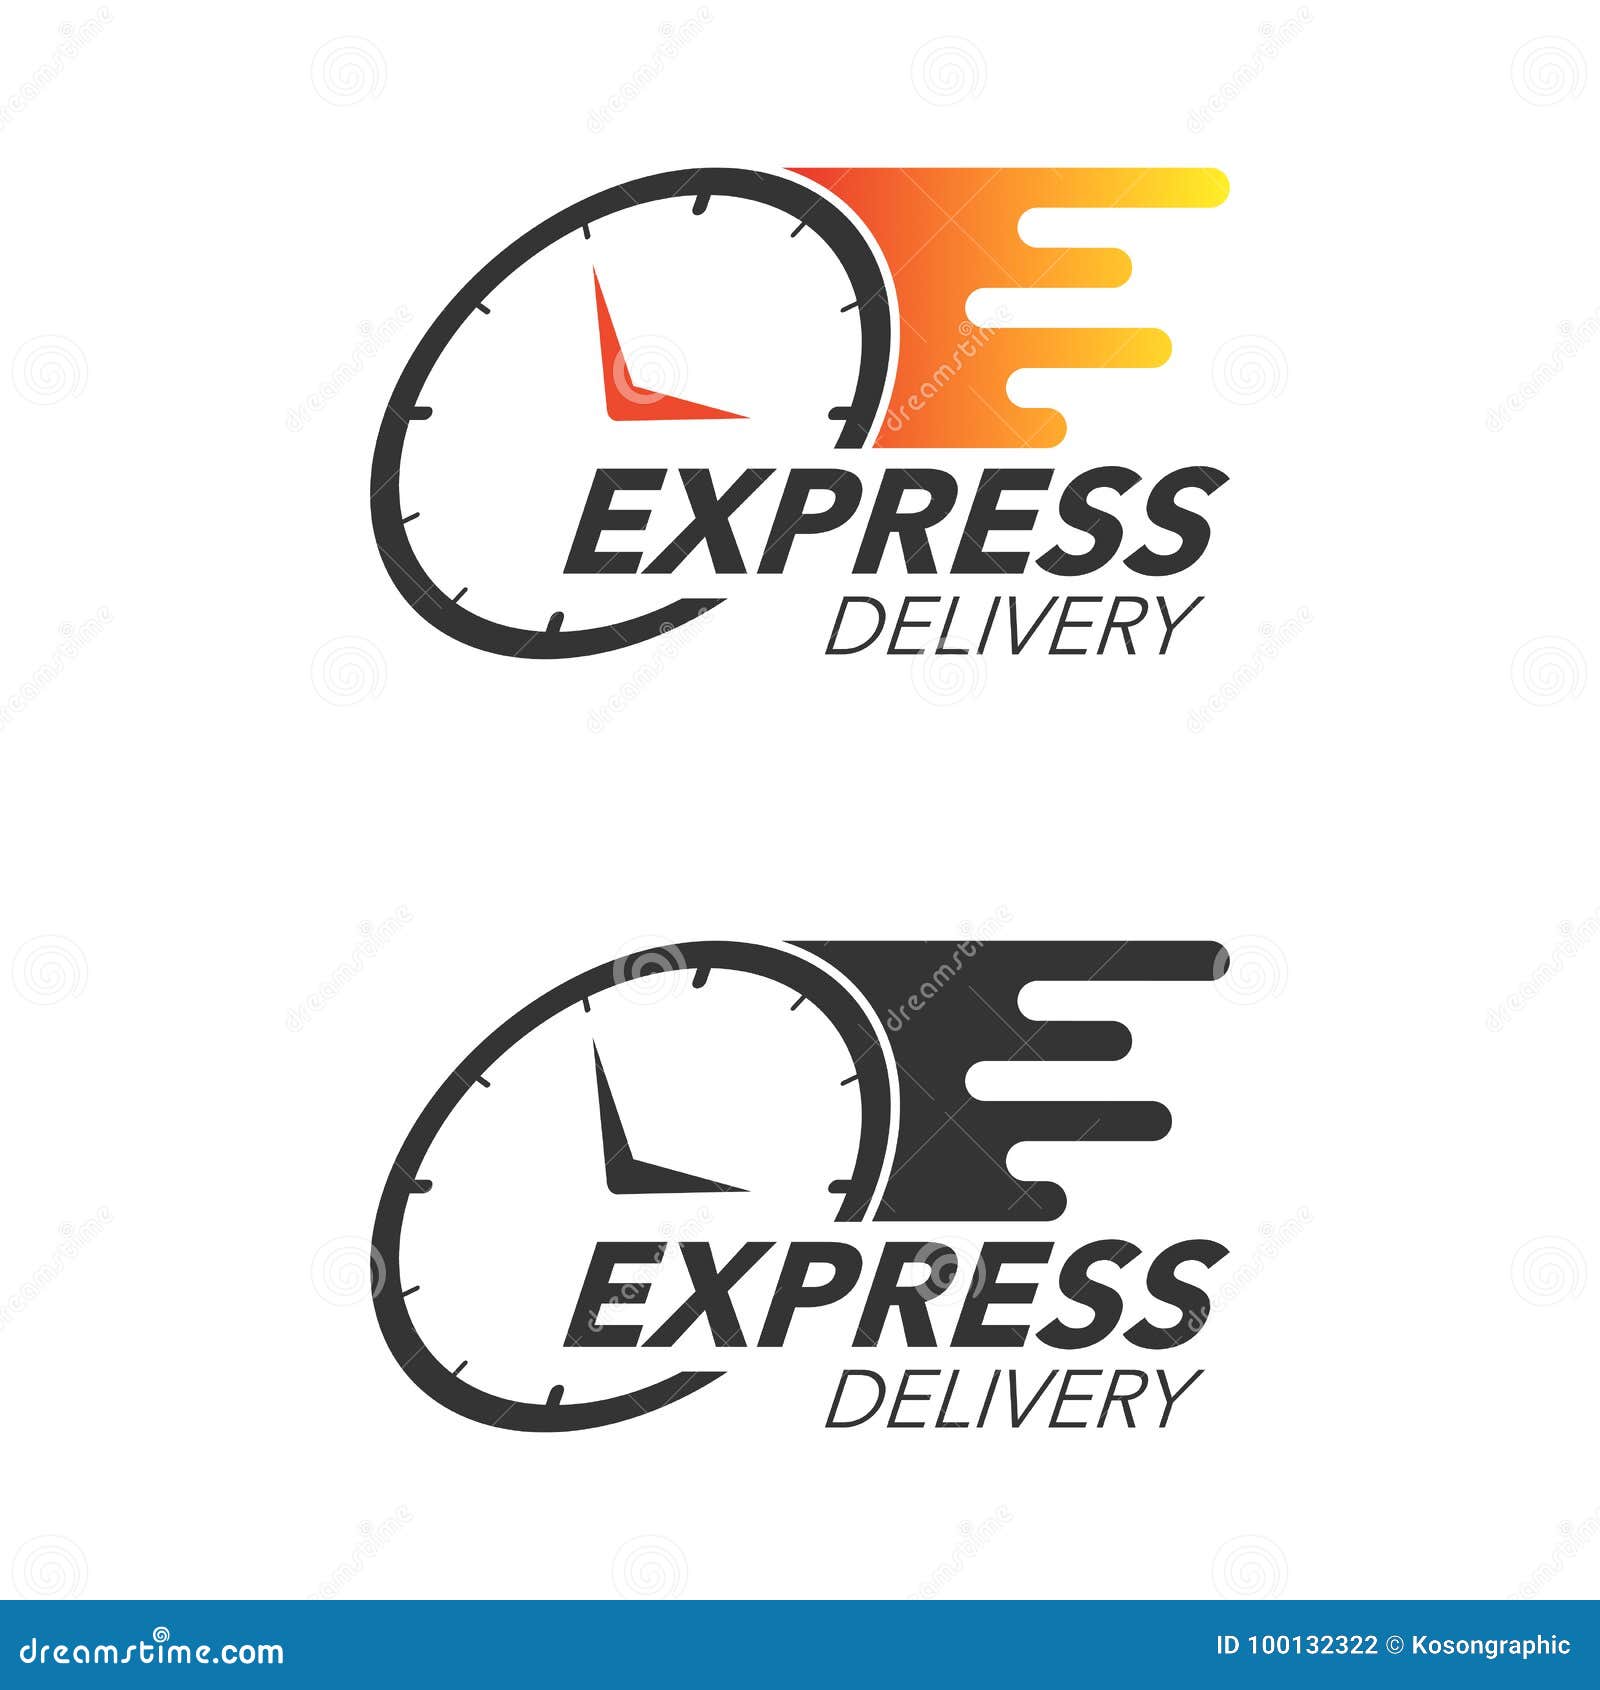 Livraison express